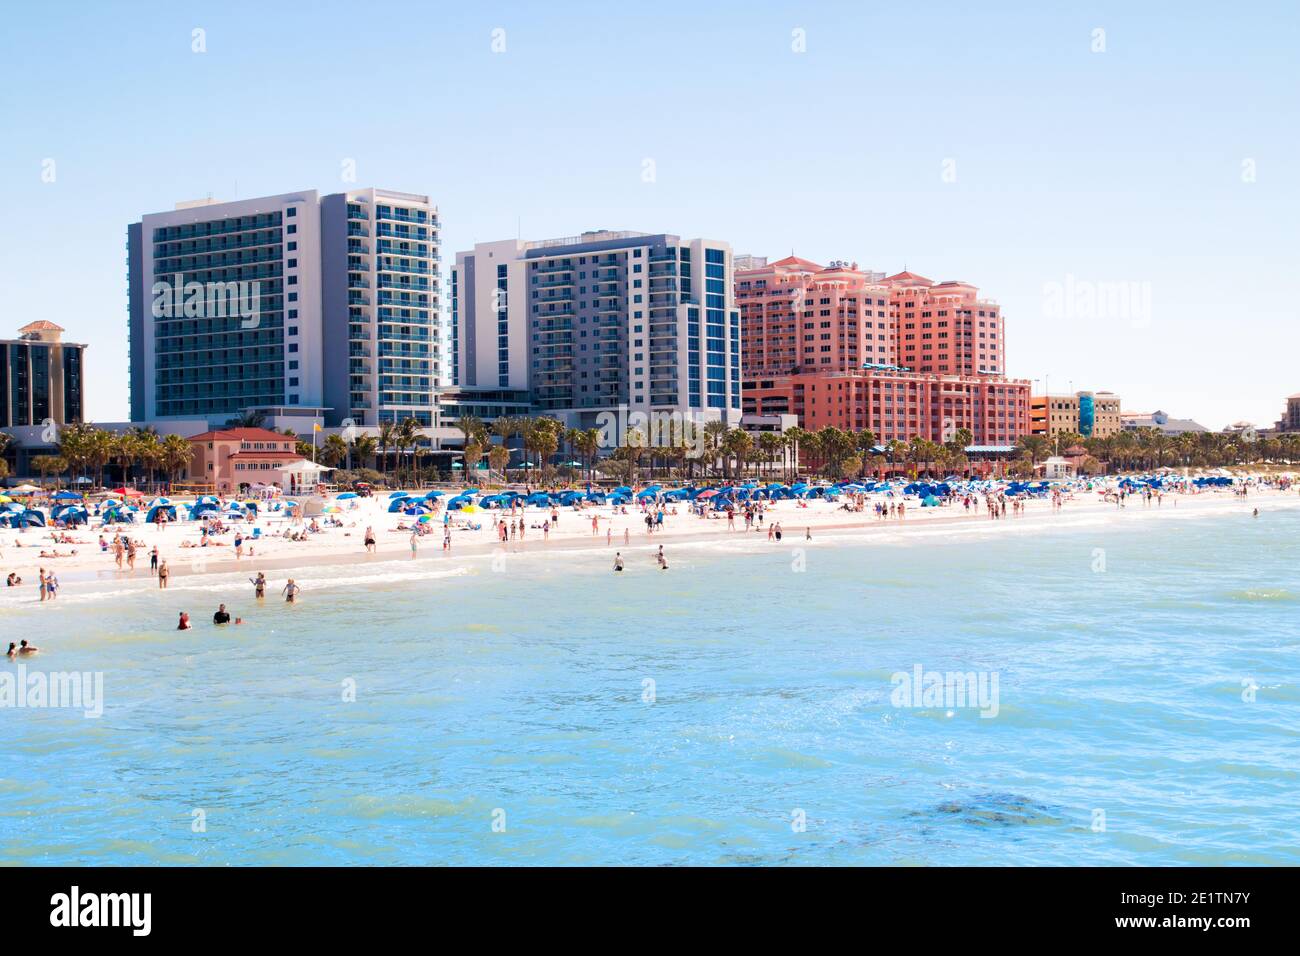 Tropischer Sandstrand Urlaubsstadt Clearwater Beach in Florida, bunte Strandhotel Resorts Gebäude, Meer und Sonnenbaden Touristen Stockfoto